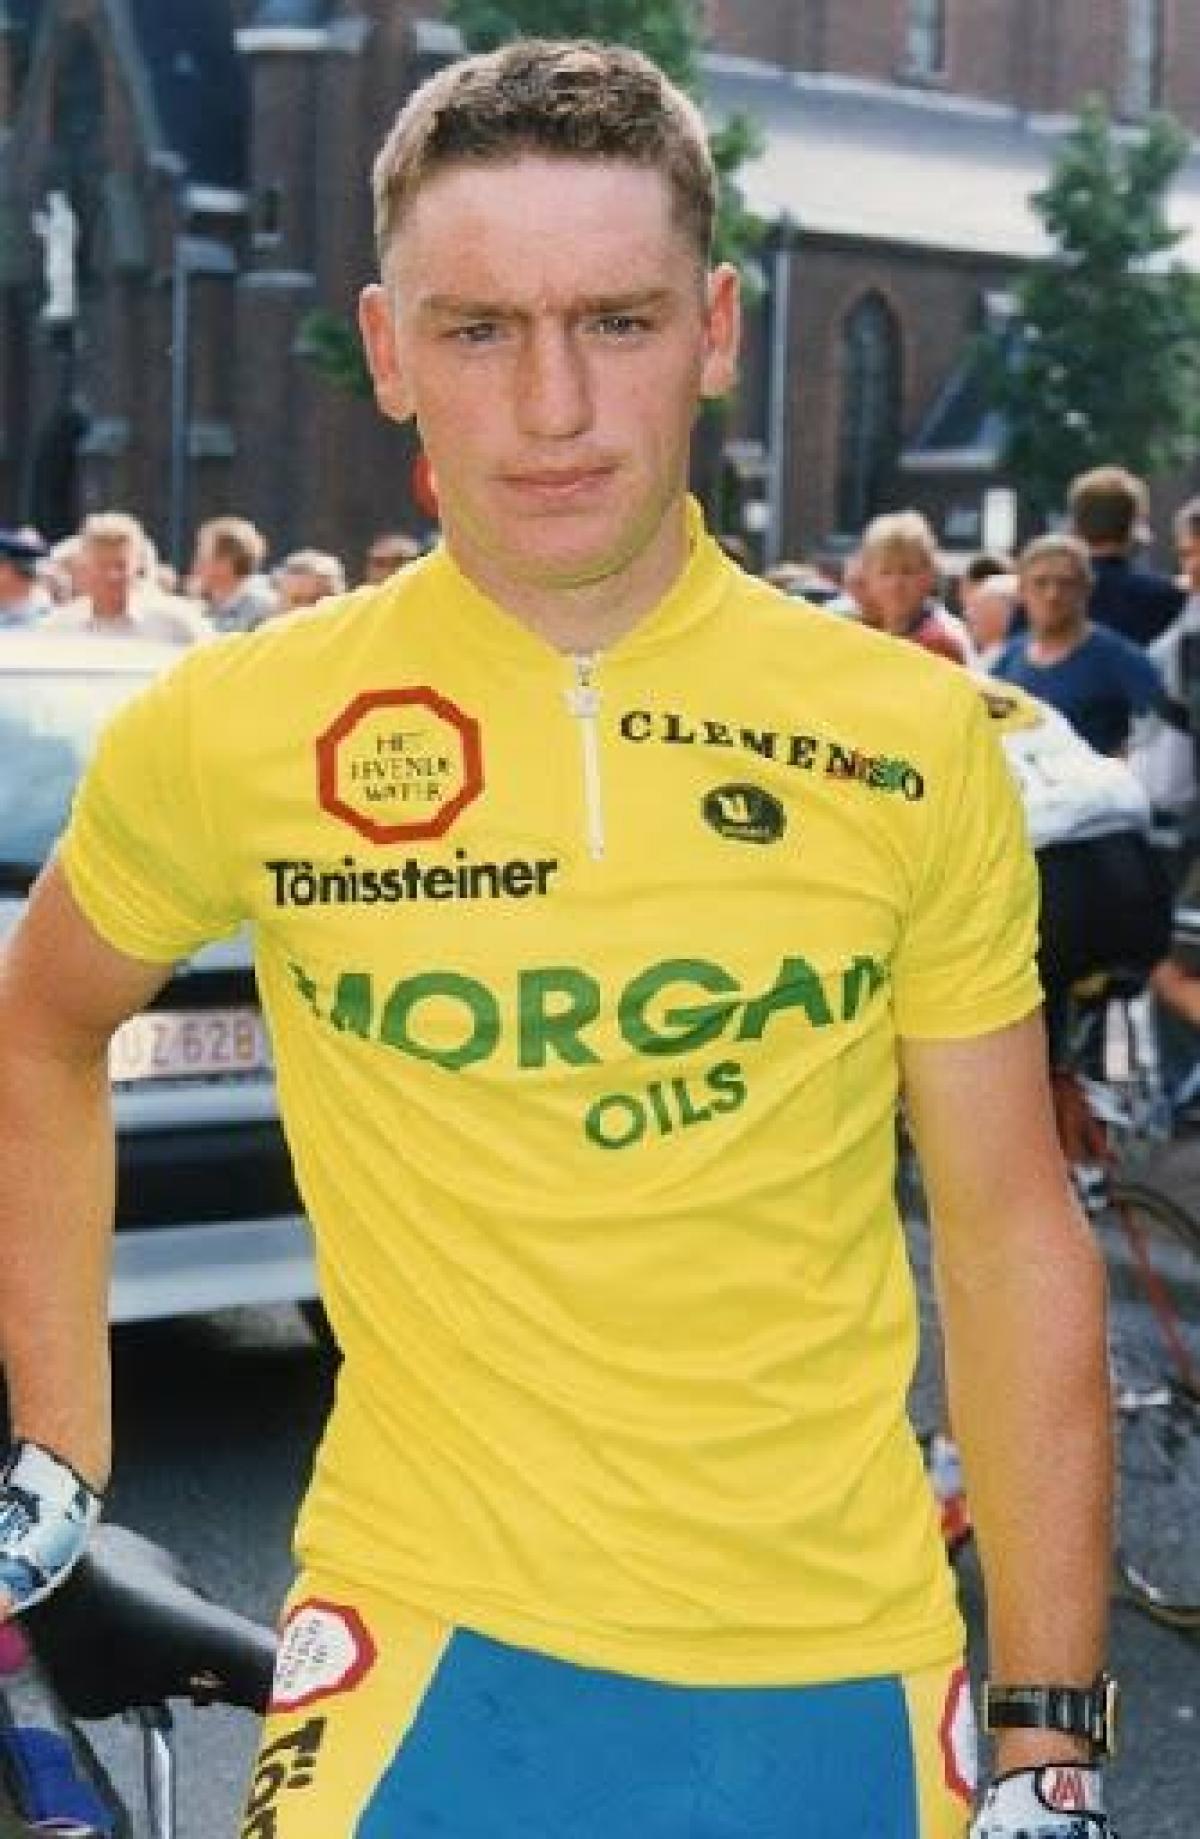 Eric Vermeeren werd gezien als een potentiële winnaar van de Ronde van Vlaanderen.© gf